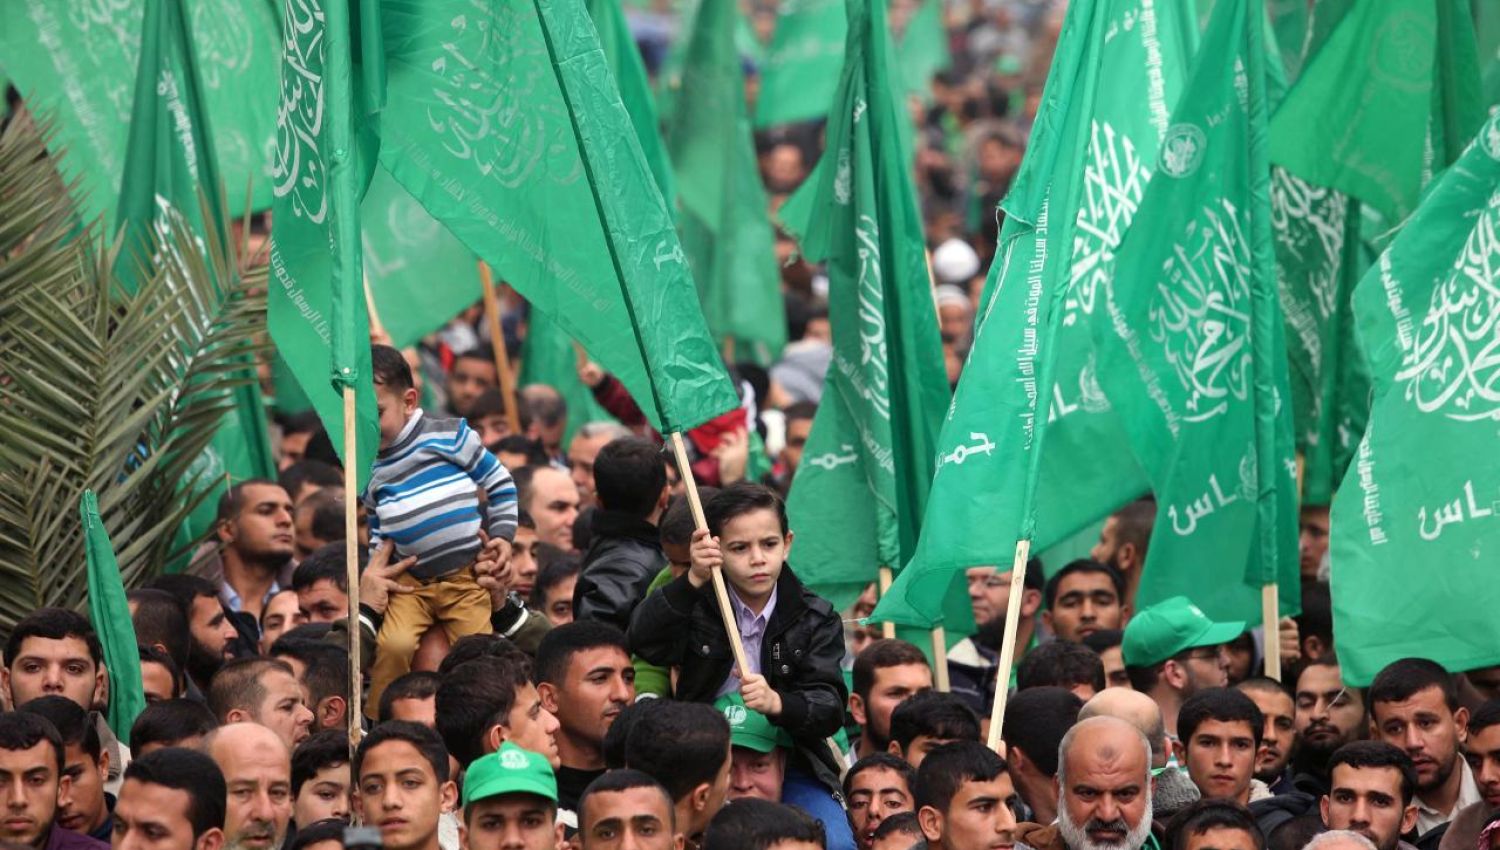 باحثان اسرائيليان: في معركة الوعي سقطت "اسرائيل" في فخ حماس